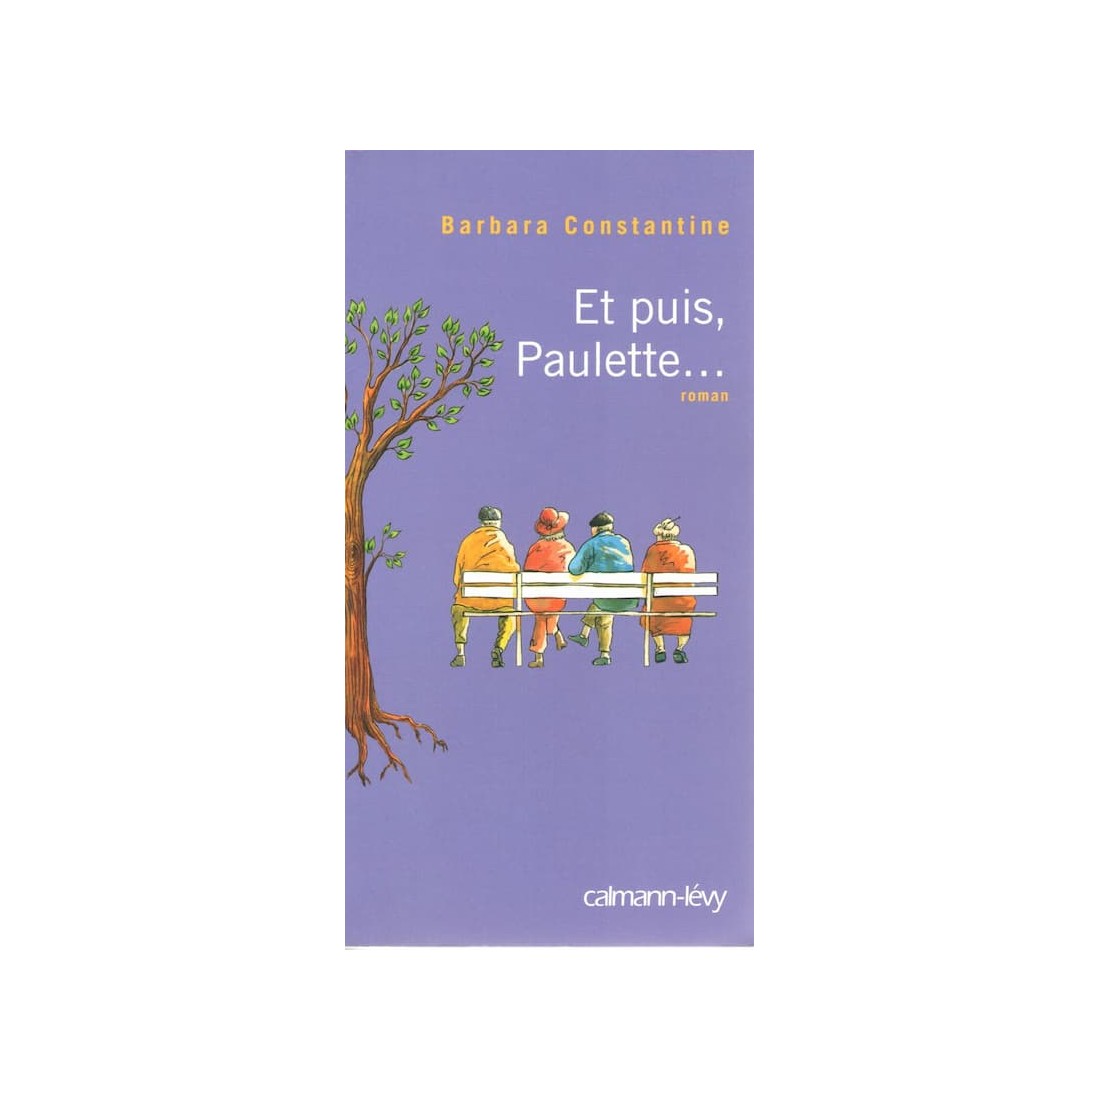 Et puis Paulette - Roman de Barbara Constantine - Ocazlivres.com